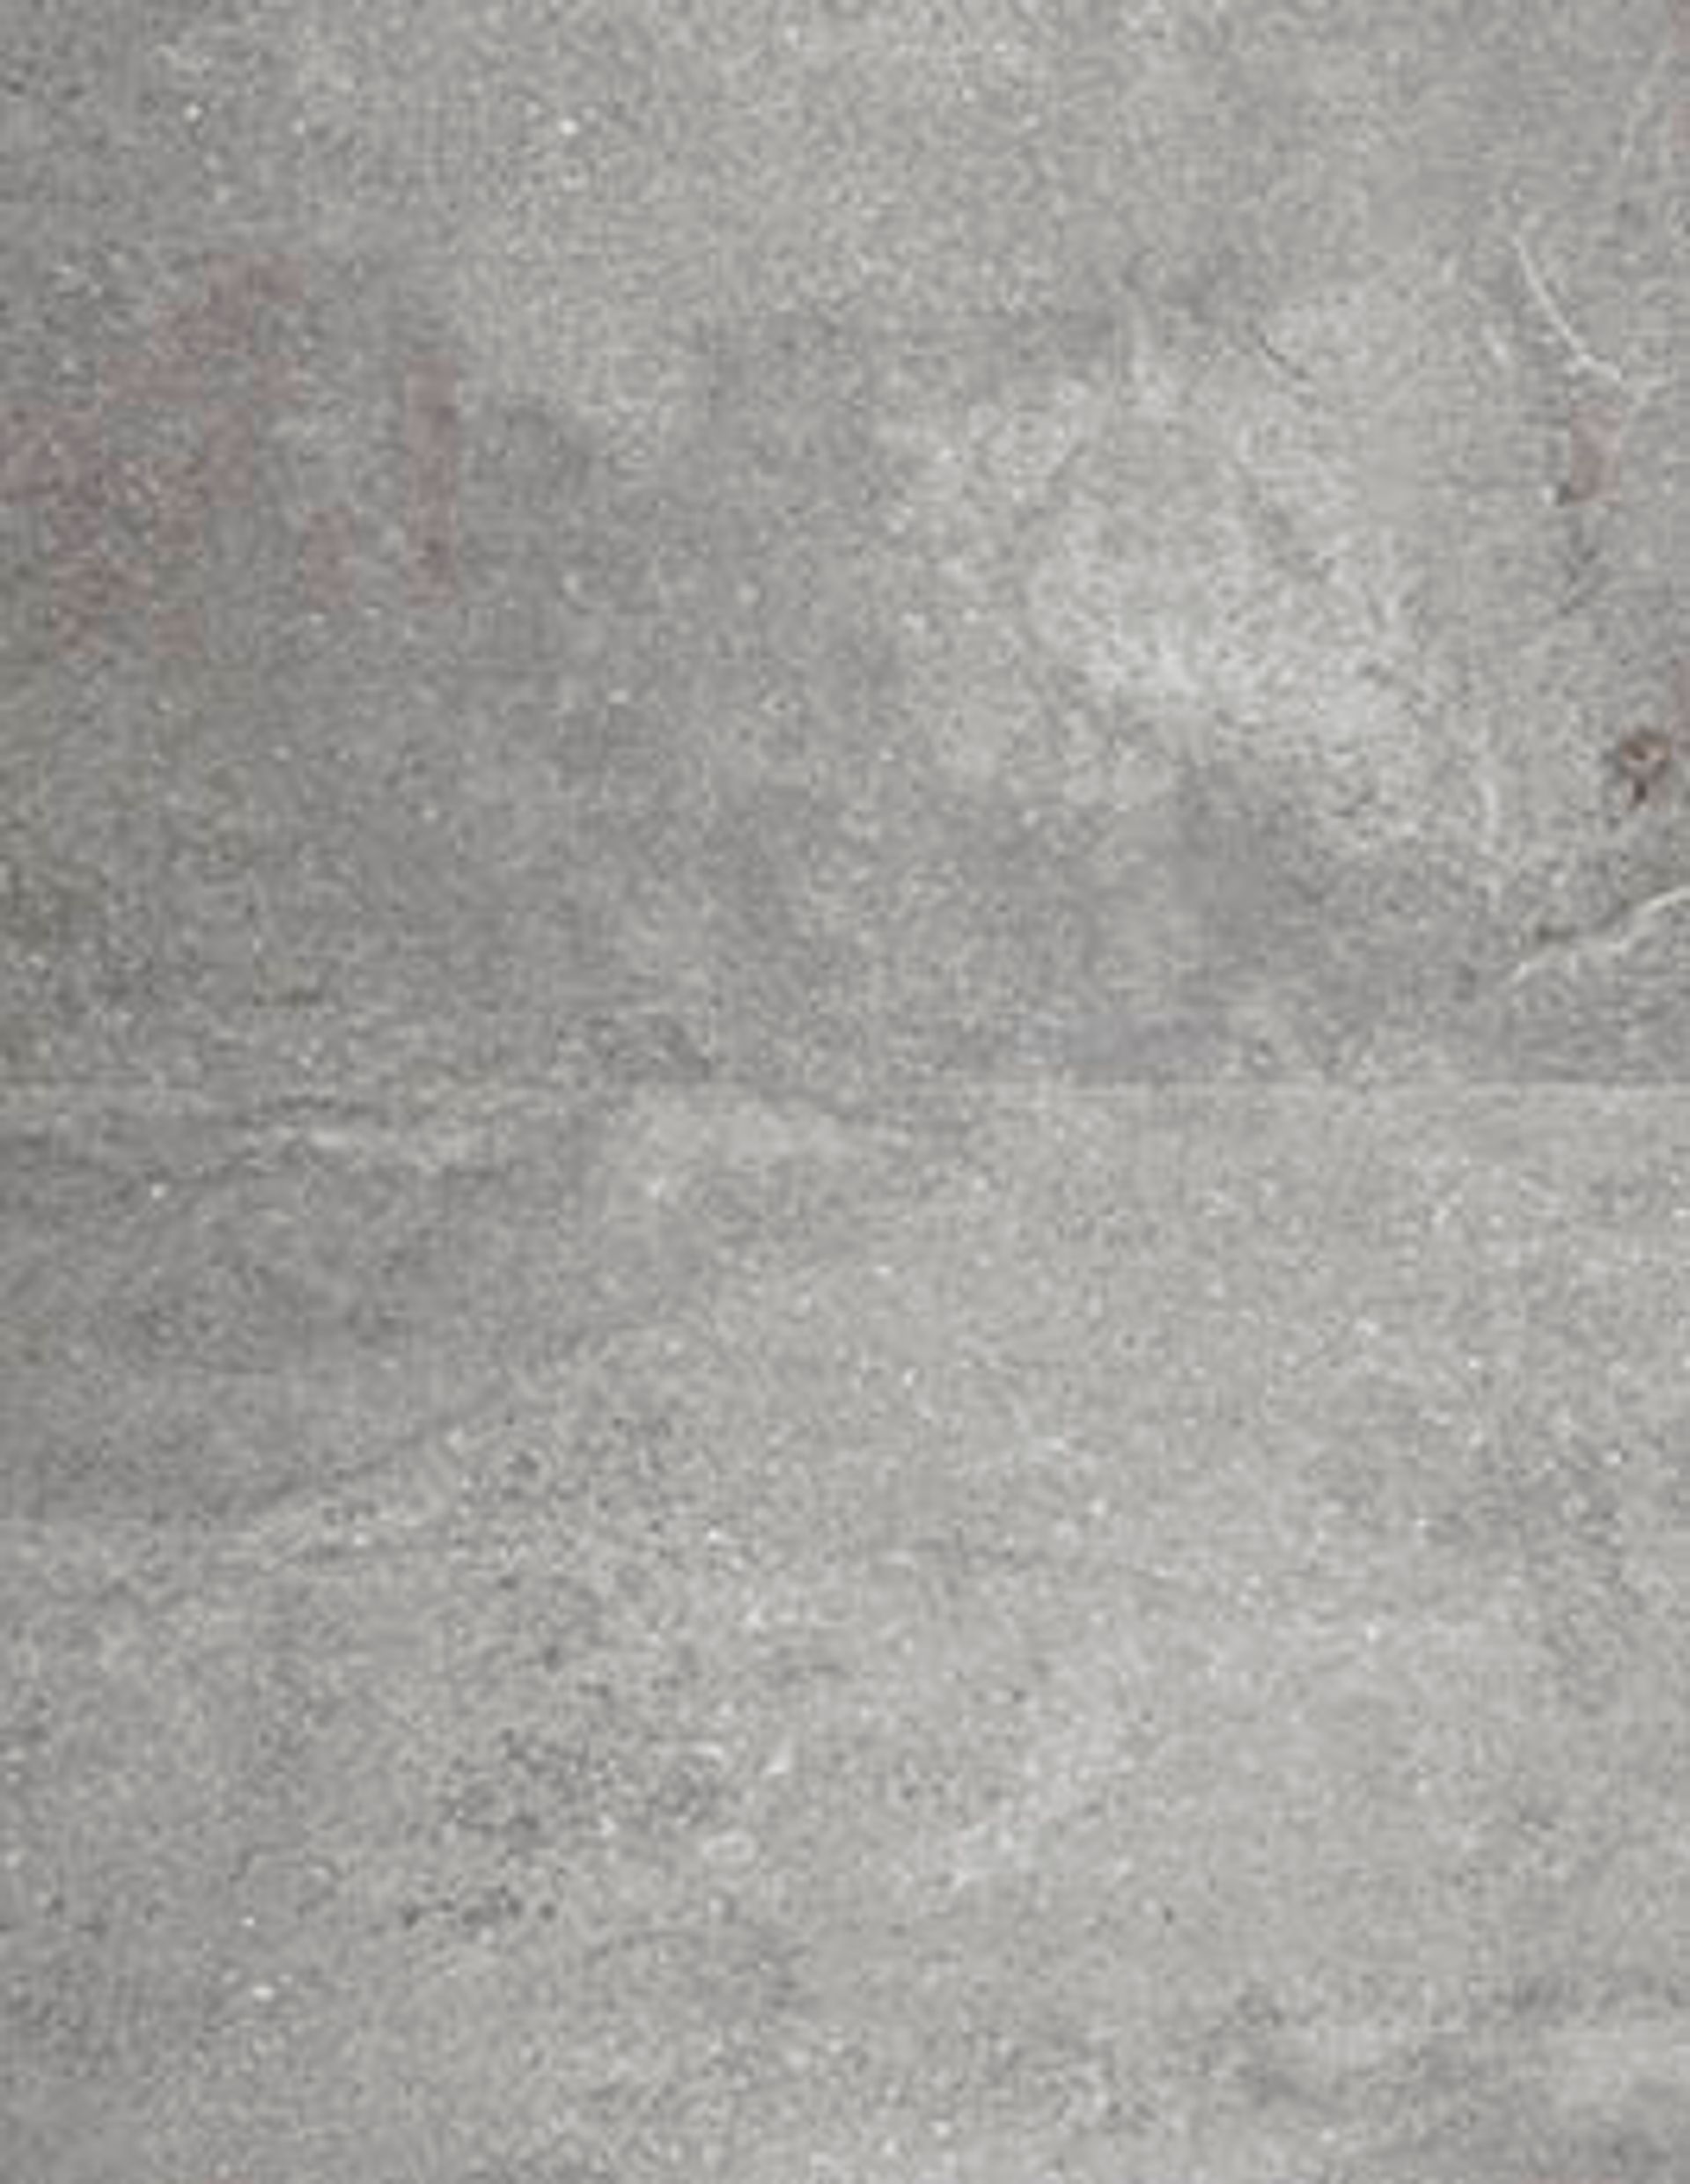 Sol vinyle SPIRIT PRO 55 DALLE Berry Alloc, Béton ciment blanchi, dalle 61.00 x 91.40 cm